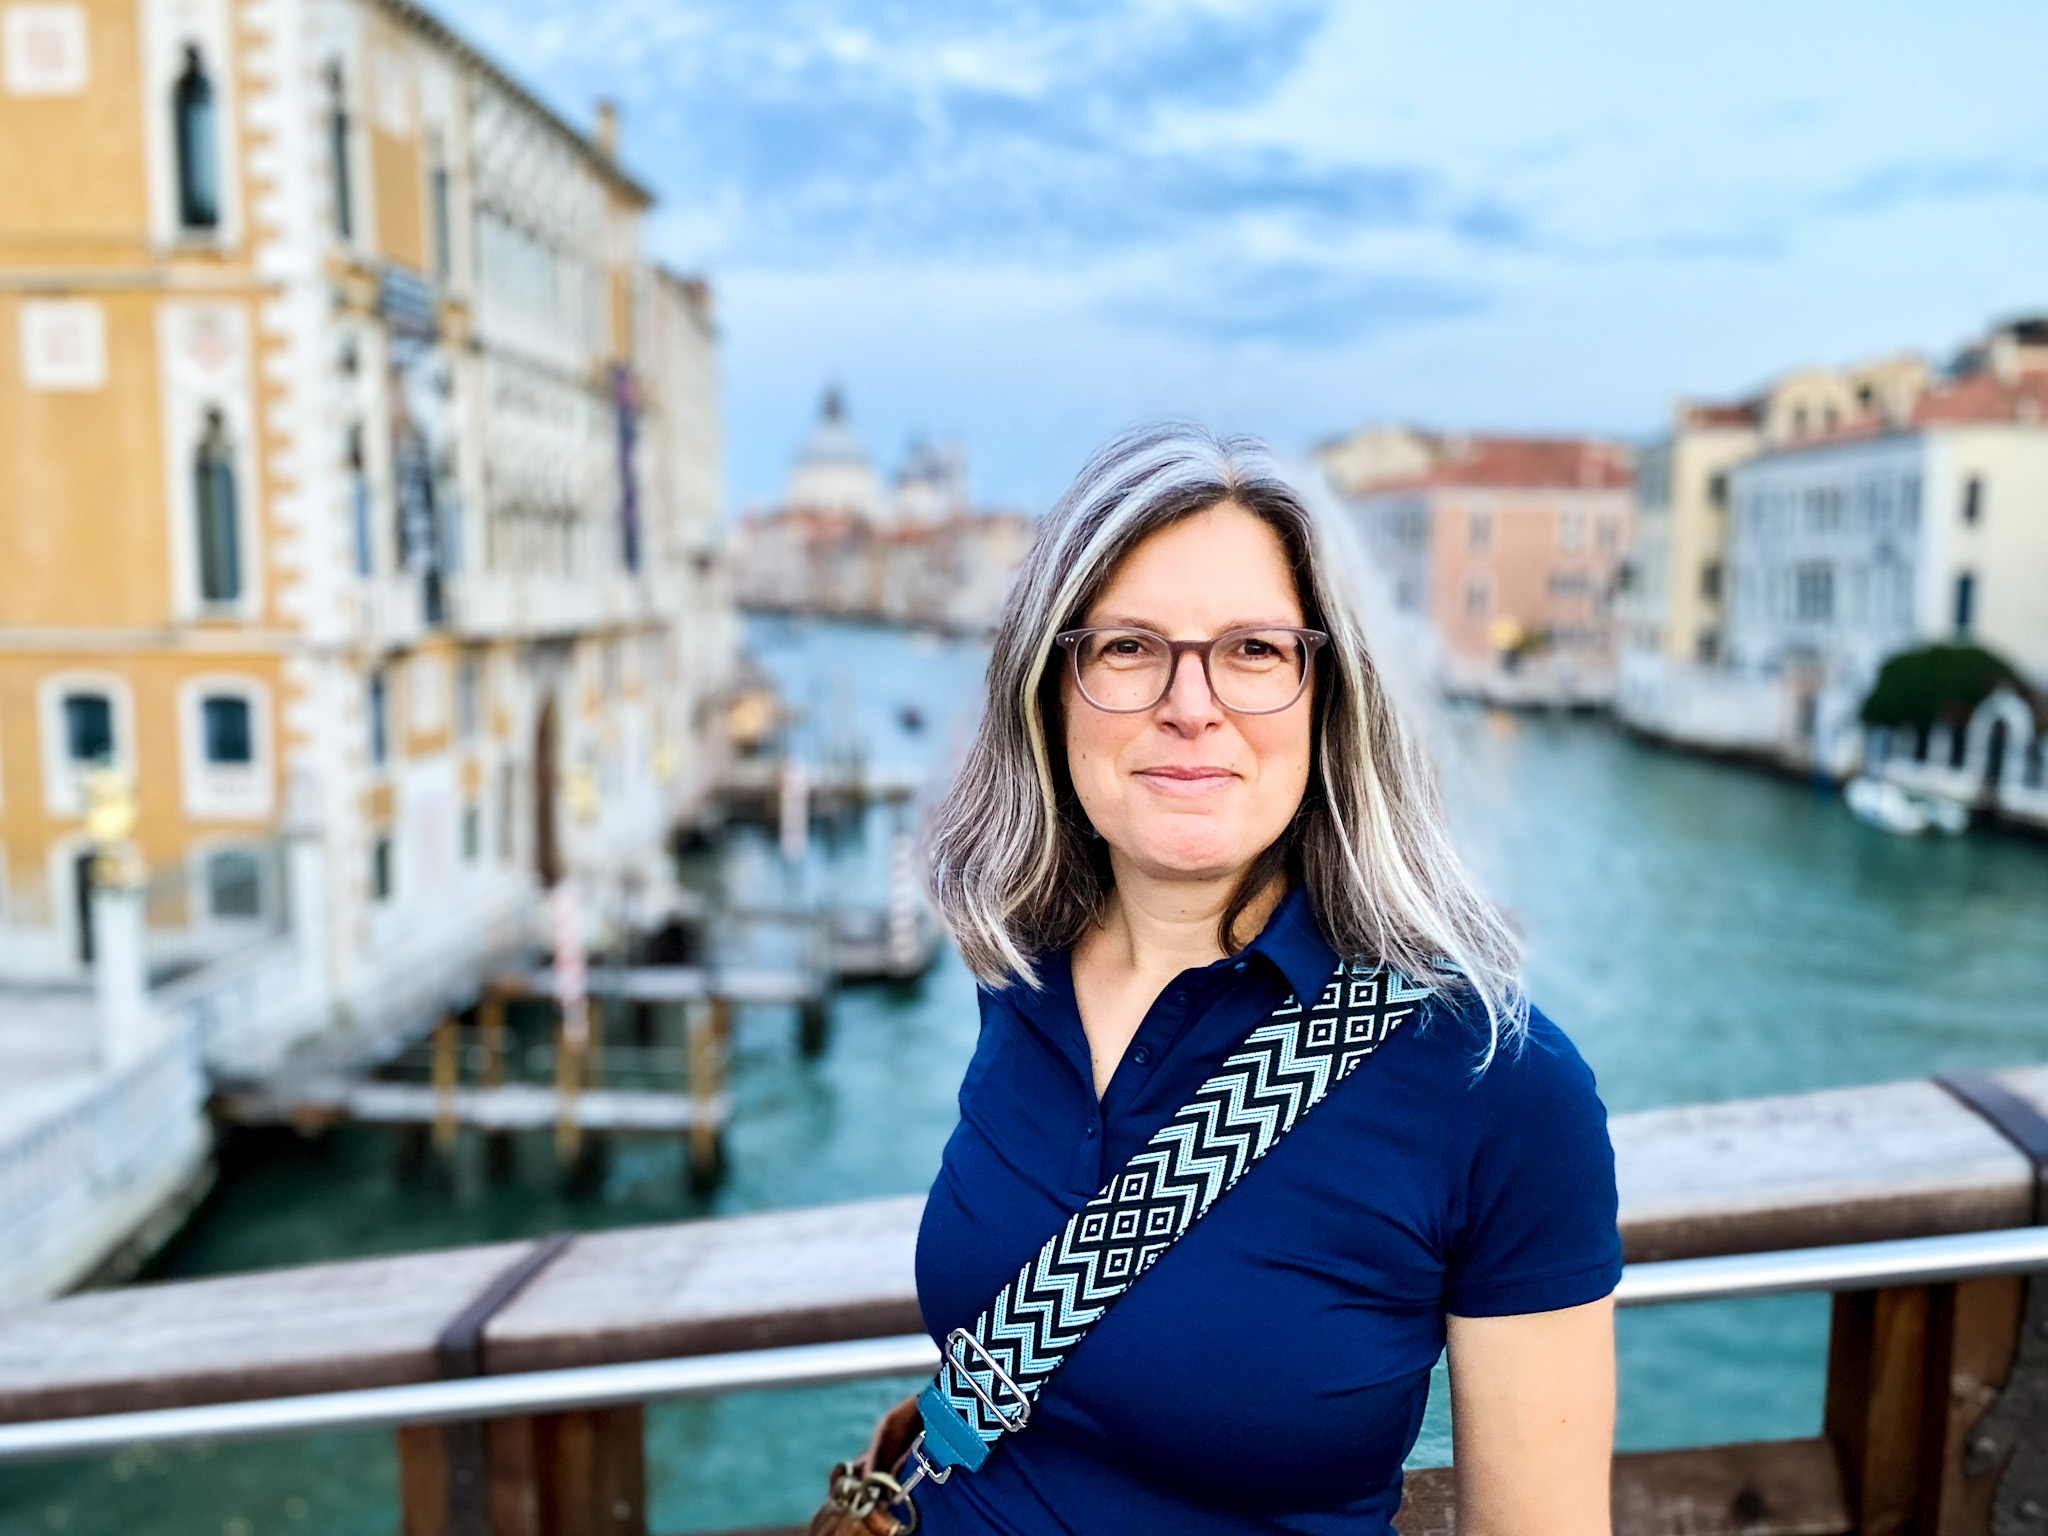 Italien, Venedig: Kirsten Rick auf der Accademia-Brücke